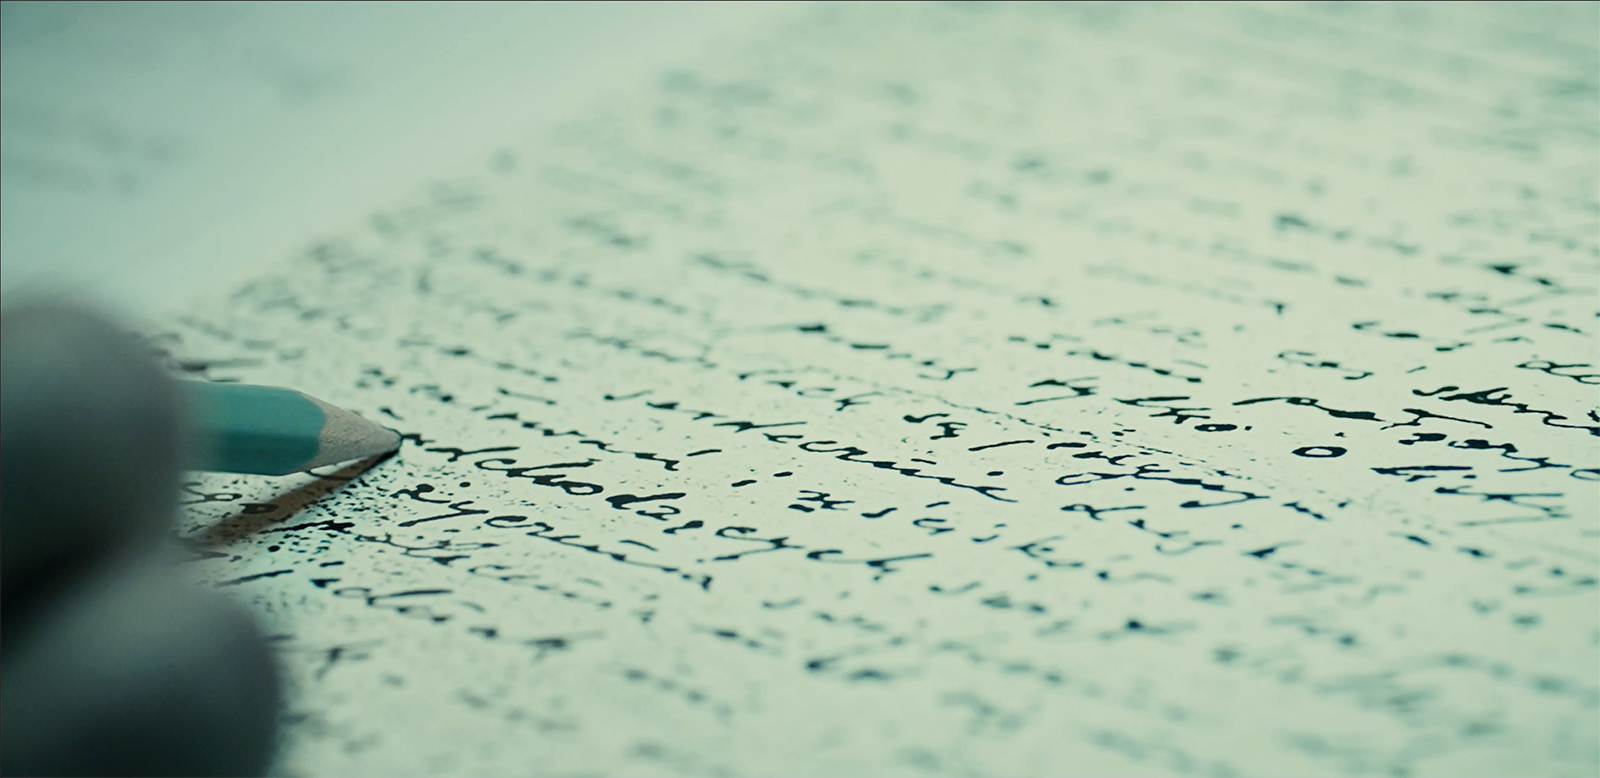 Zdjęcie przedstawiające pisanie ołówkiem po kartce papieru